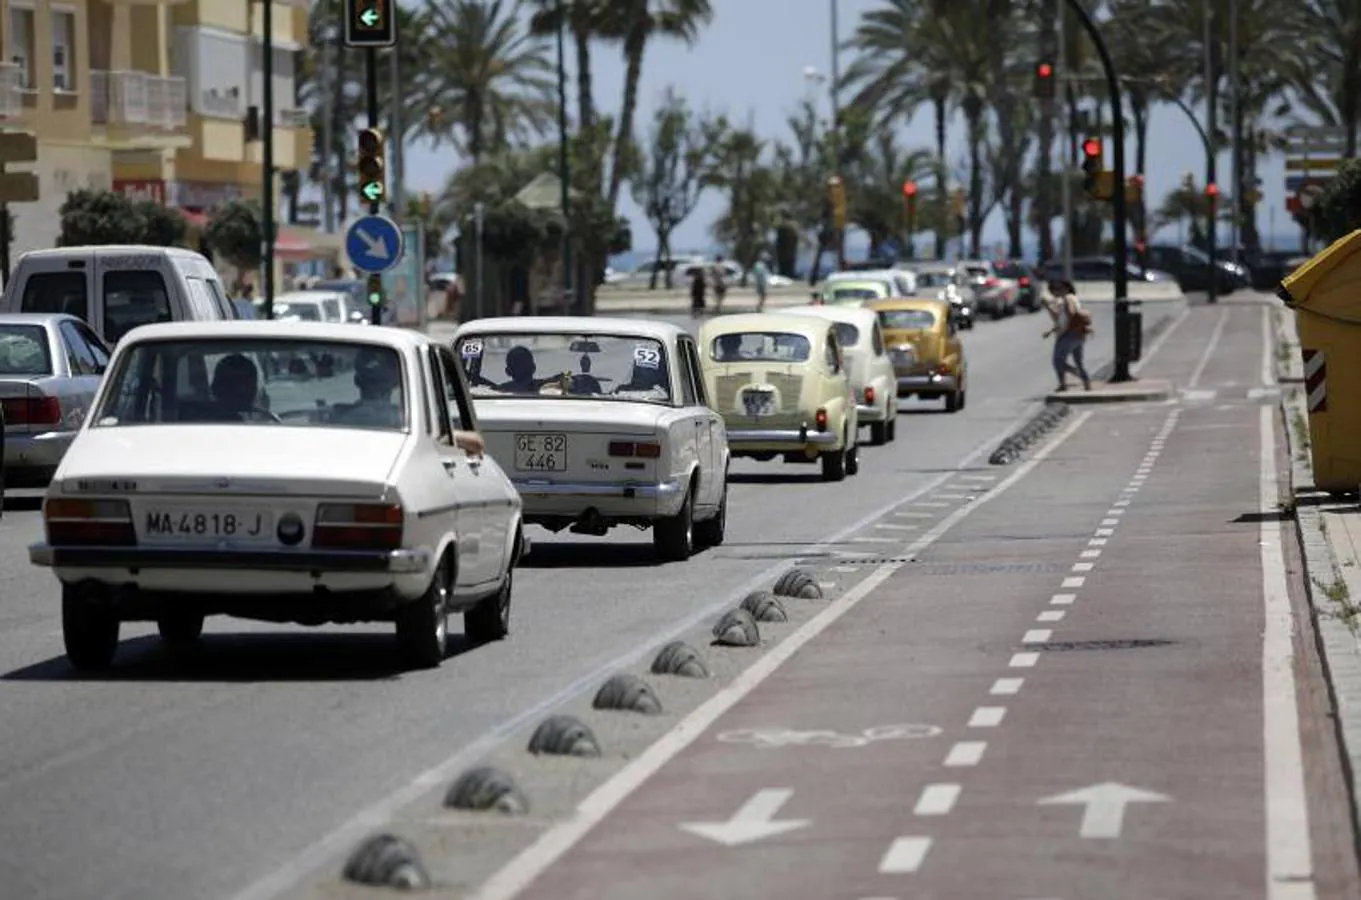 Una veintena de coches antiguos participan en la IV Caravana Solidaria que organiza el Museo Automovilístico con fines benéficos